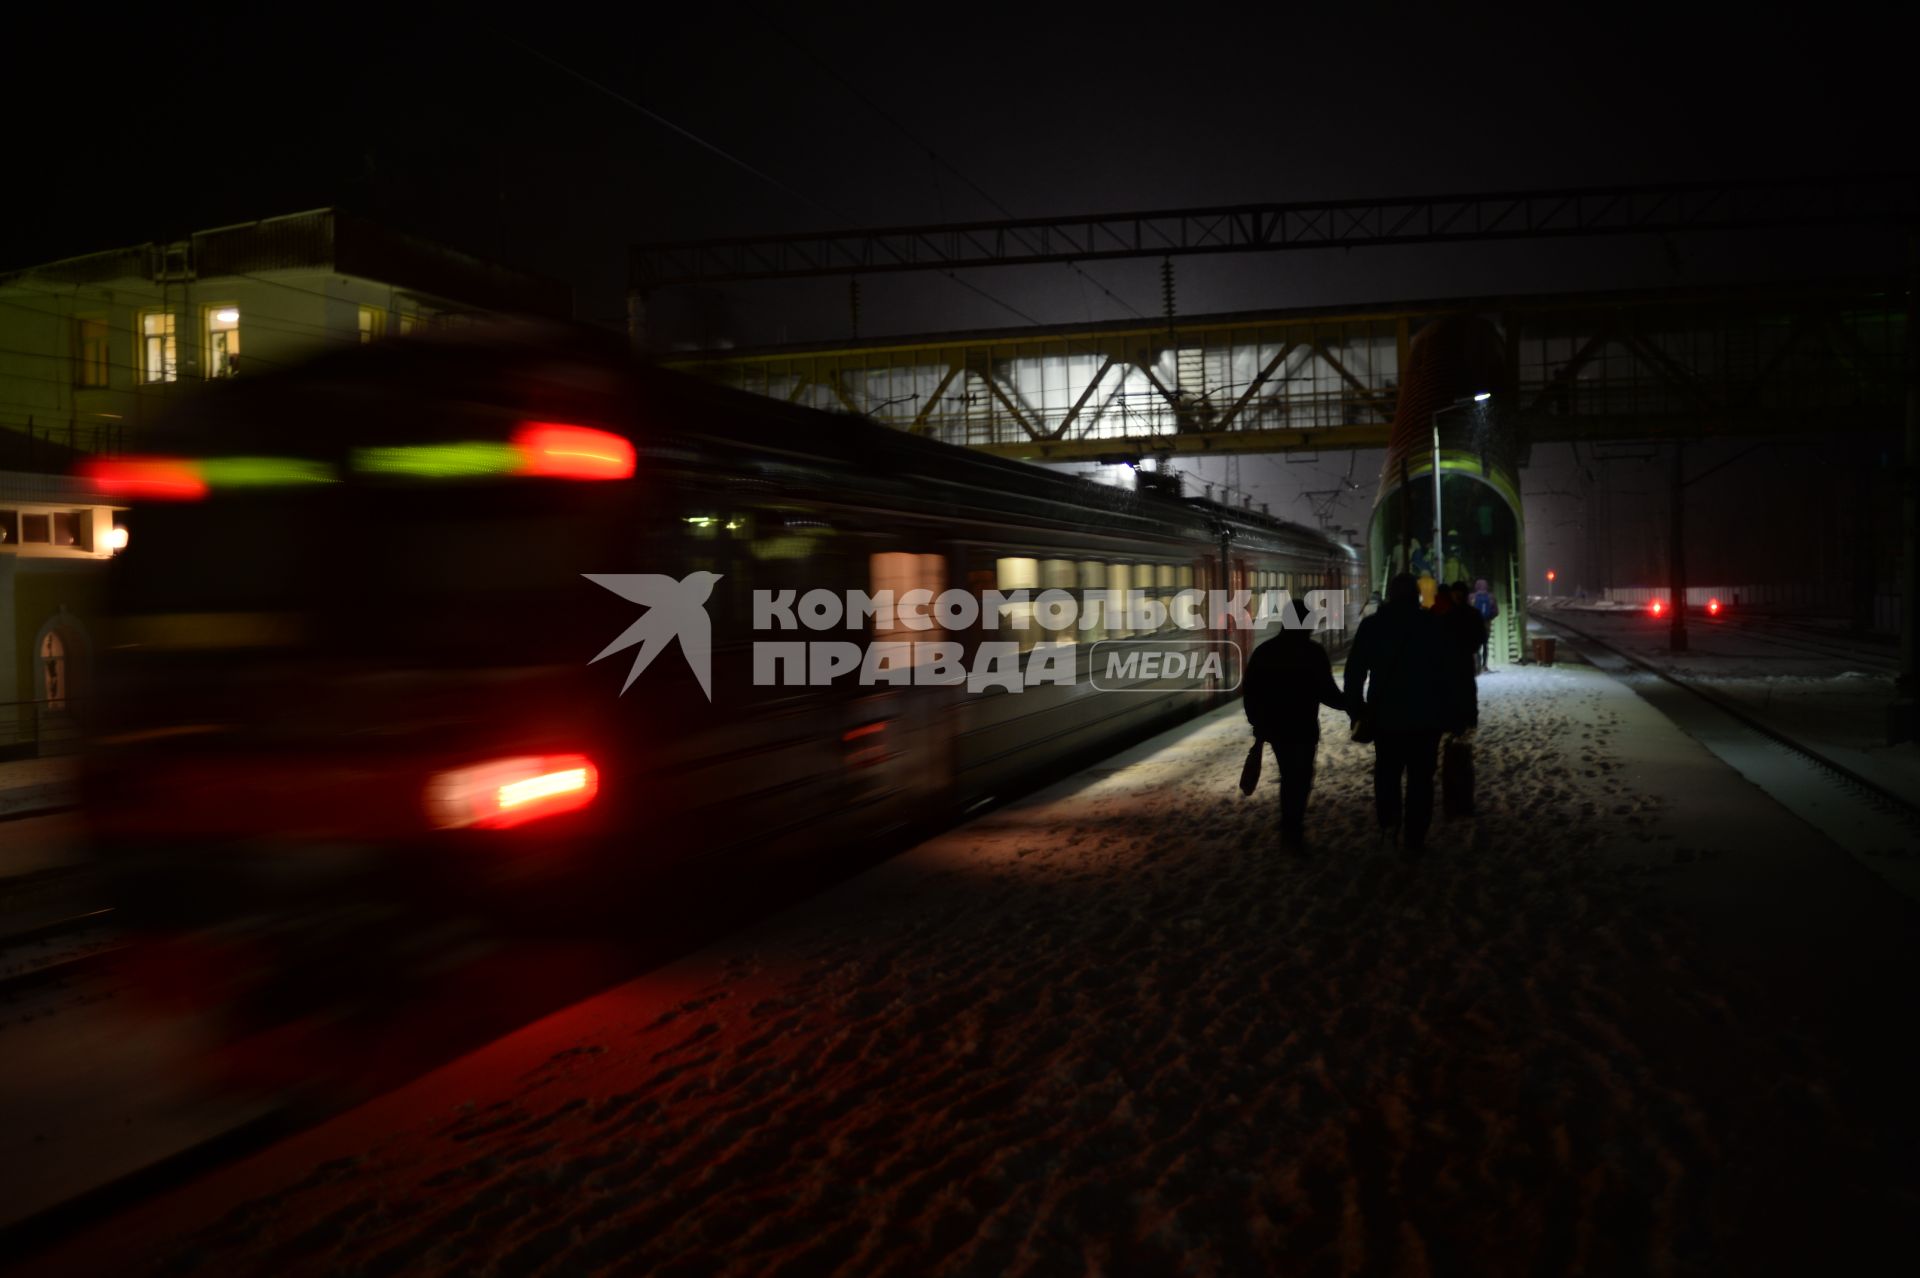 Владимирская область, г. Вязники. Пассажиры выходят из электрички на вокзале.